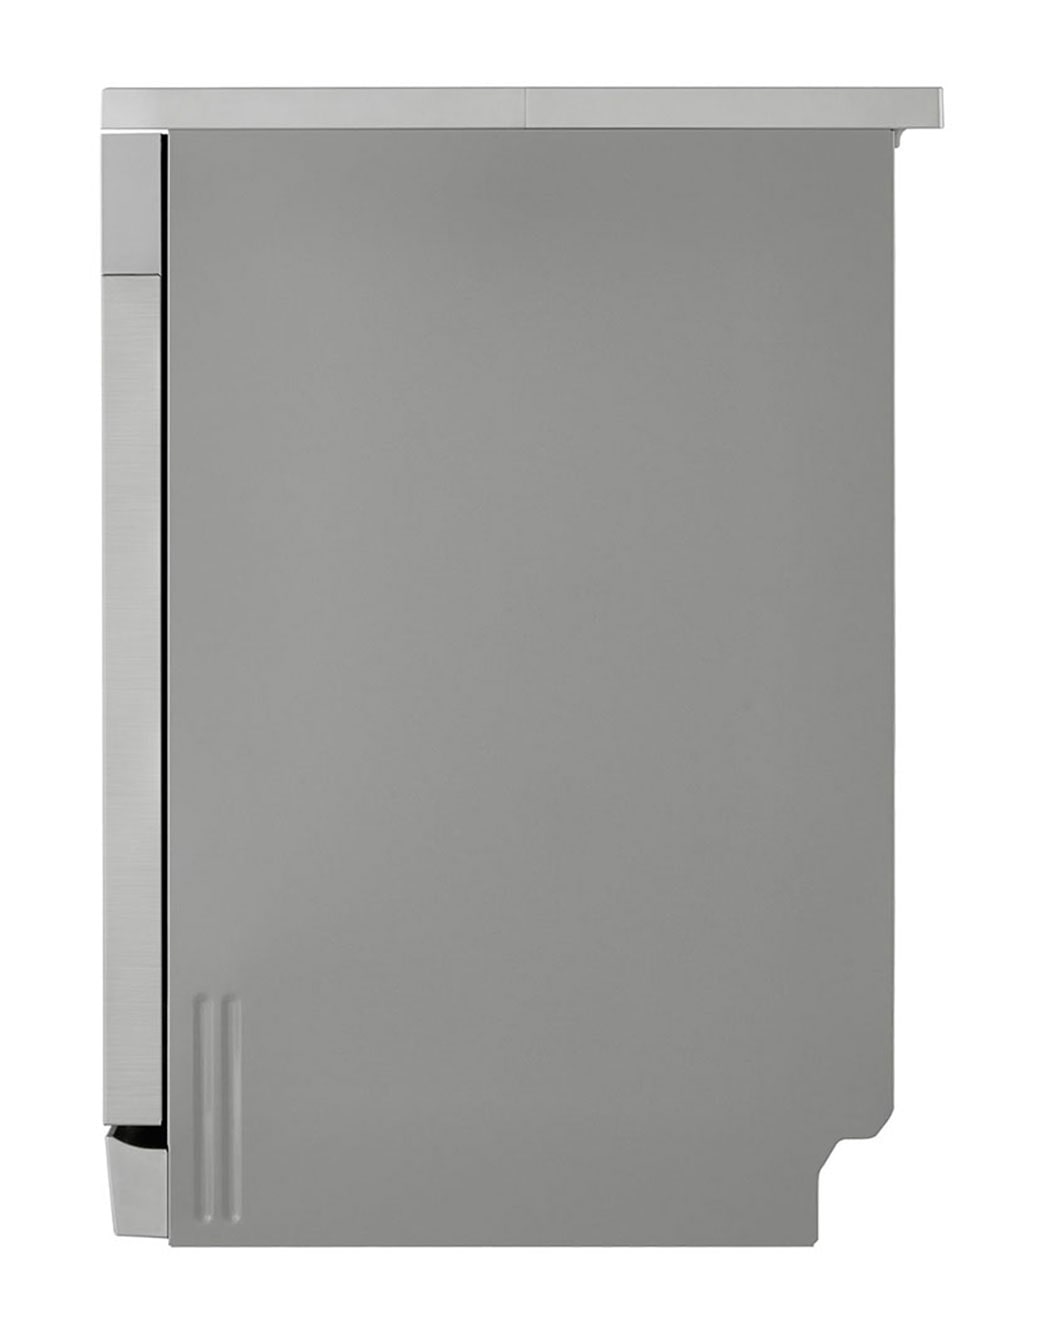 LG Quad Wash Dishwasher, DFC612FV